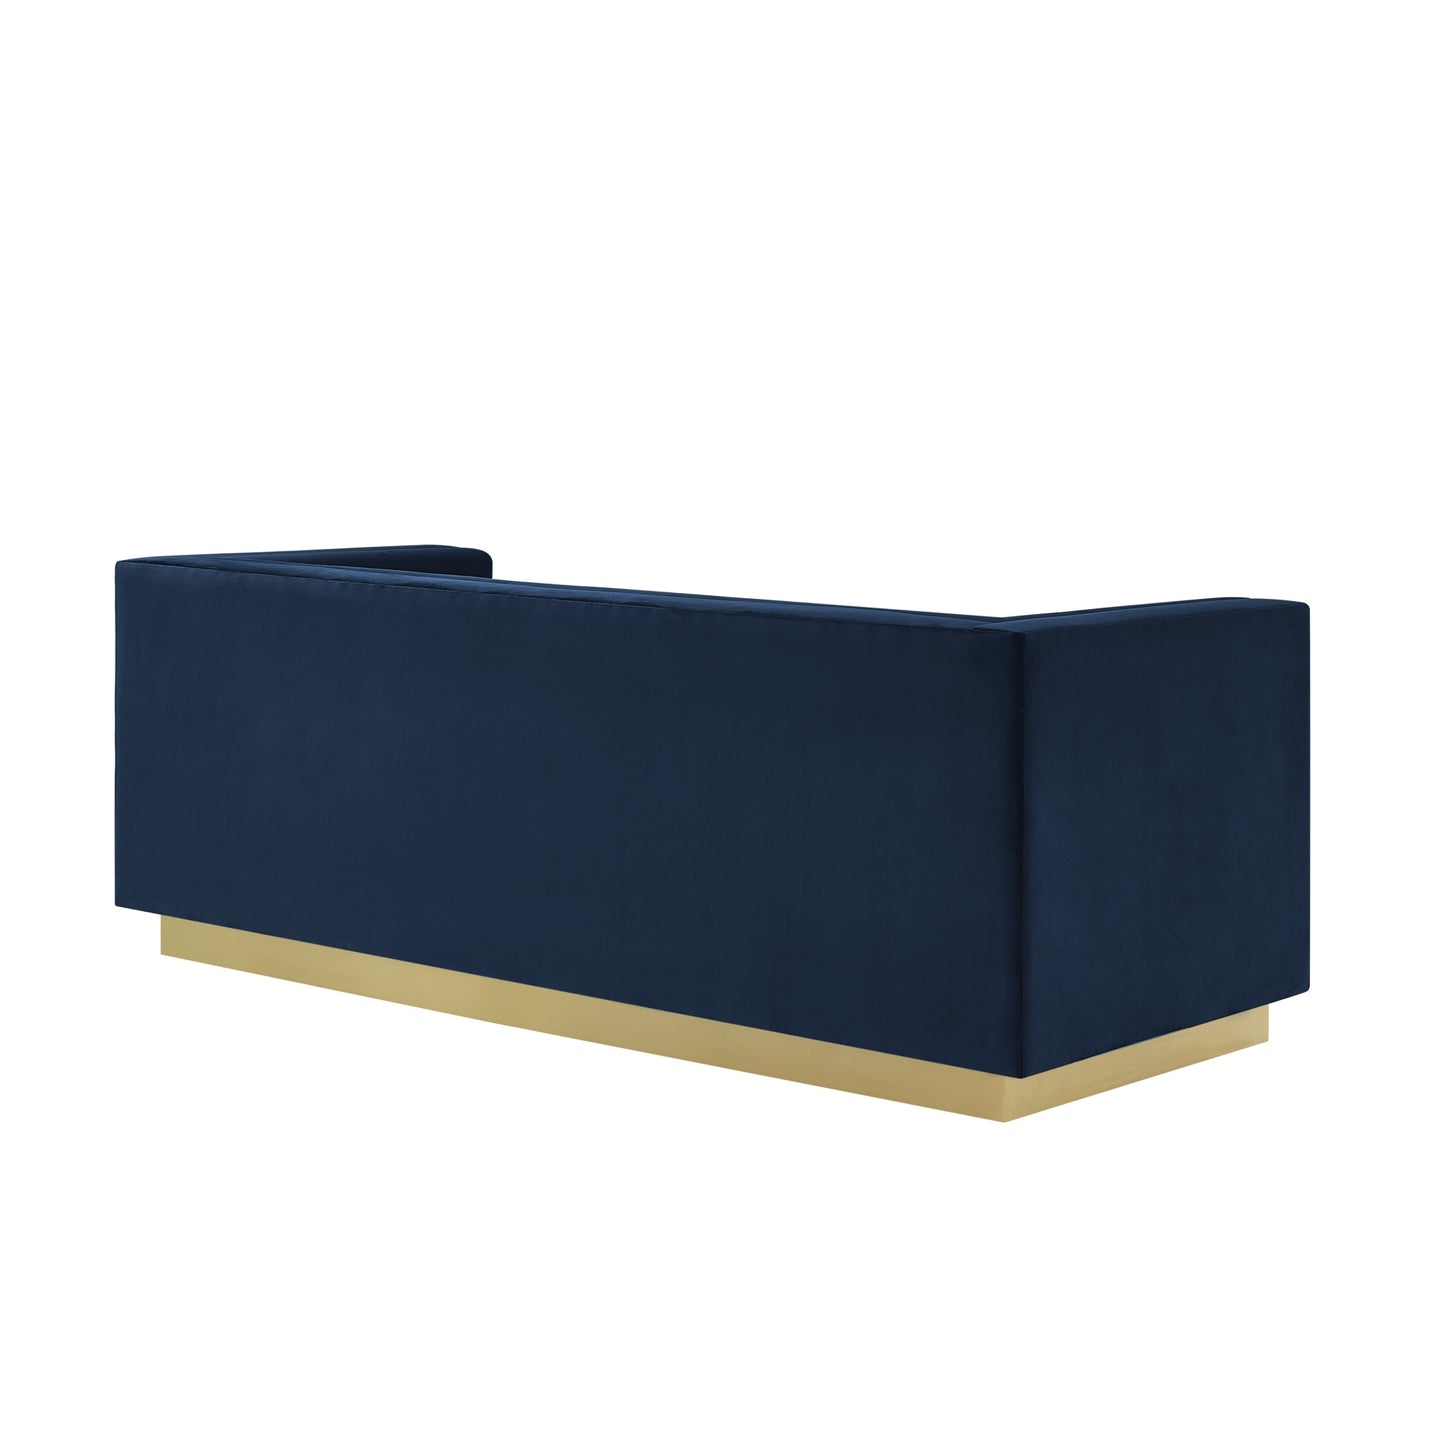 84" Navy Blue Velvet Sofa With Legs